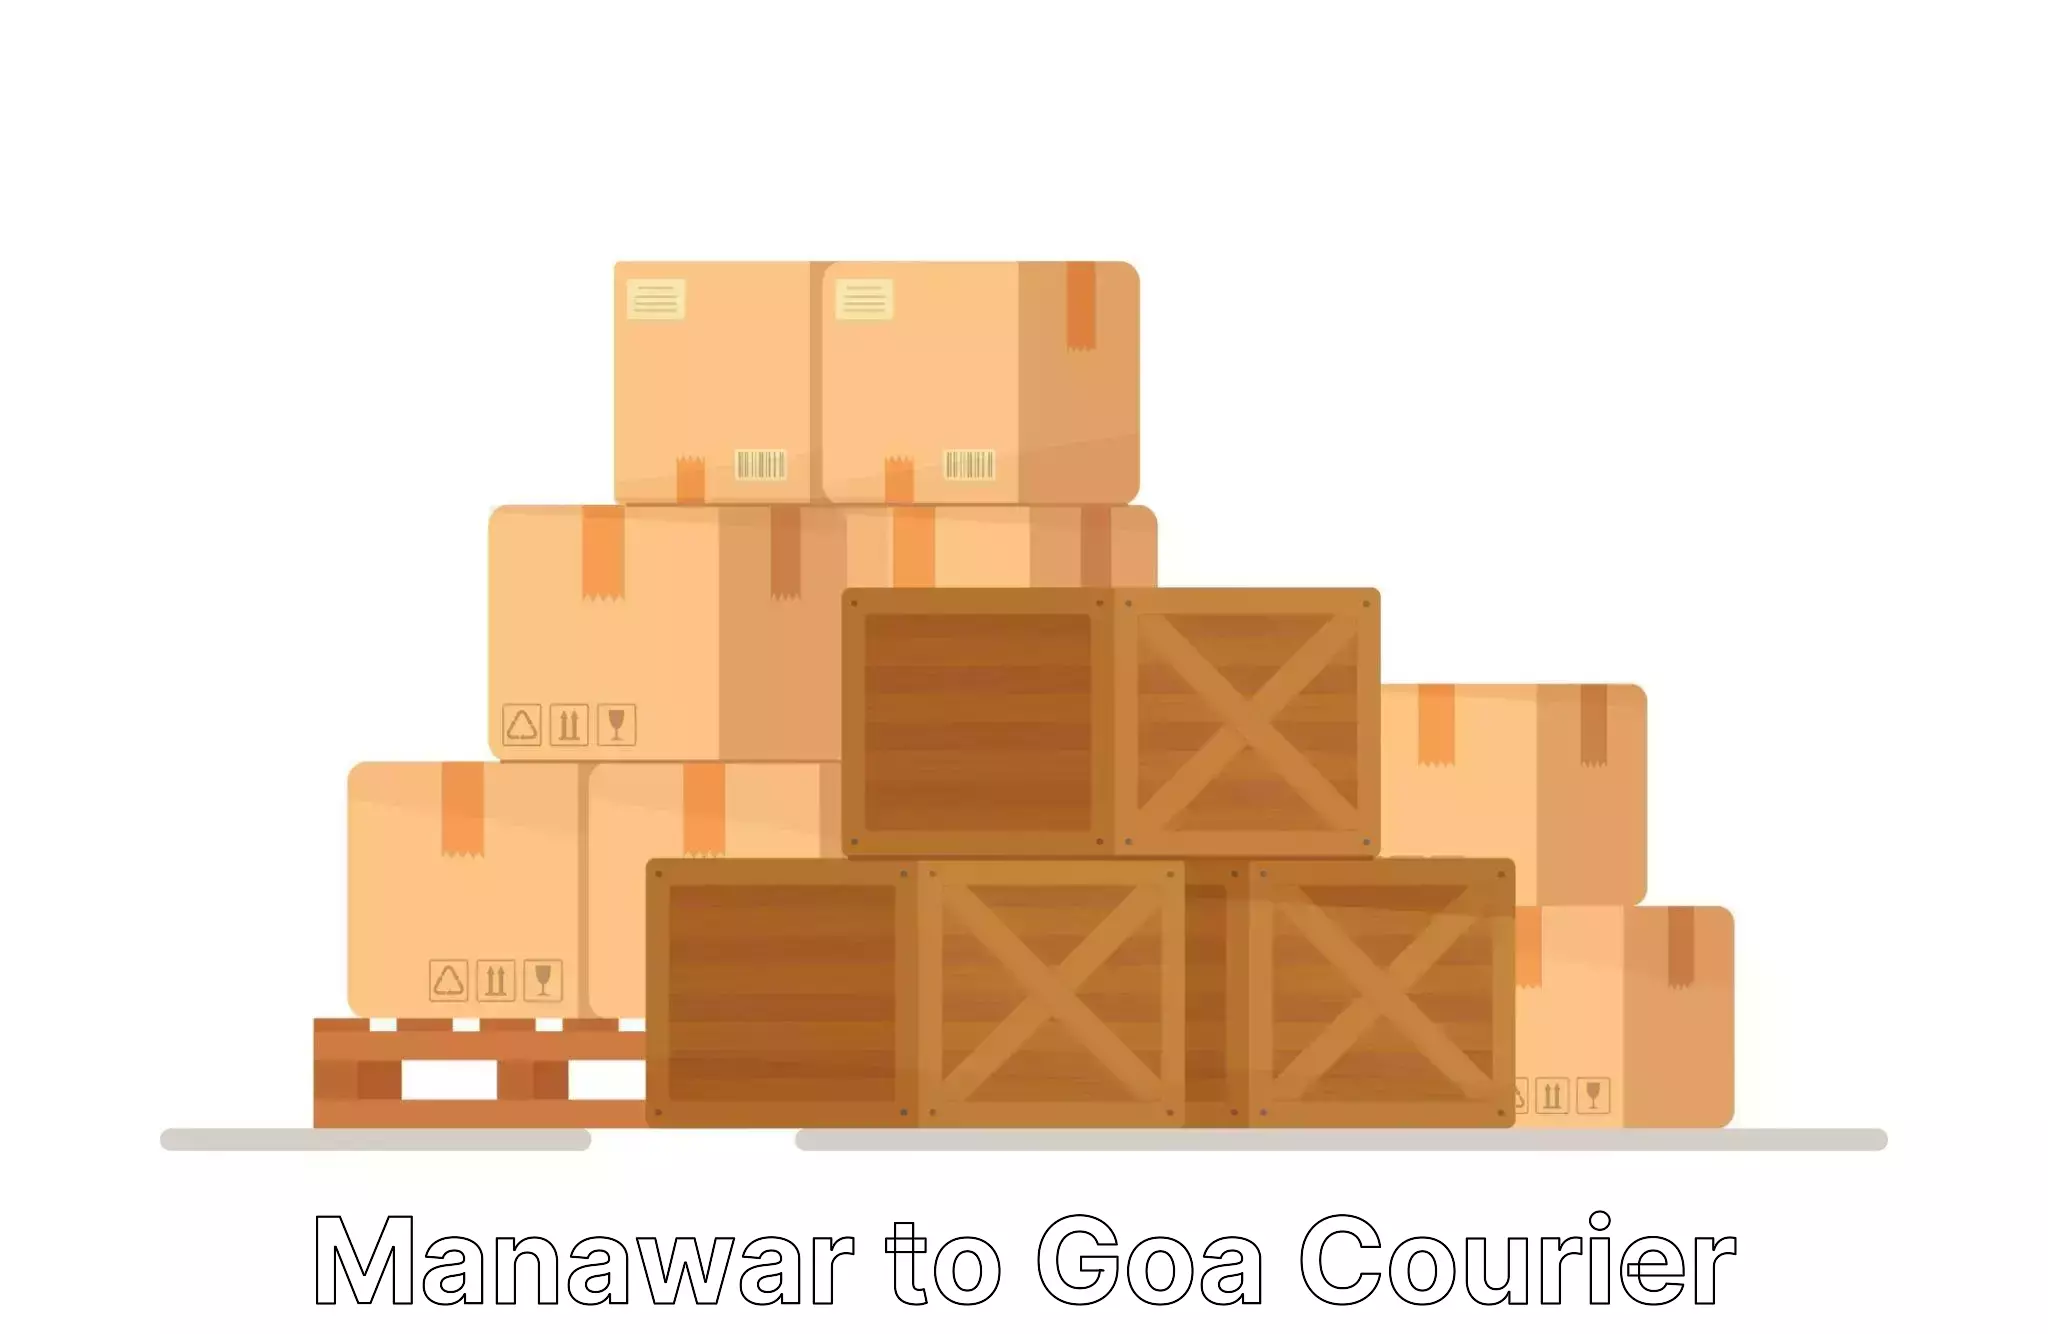 Quality relocation services Manawar to Vasco da Gama